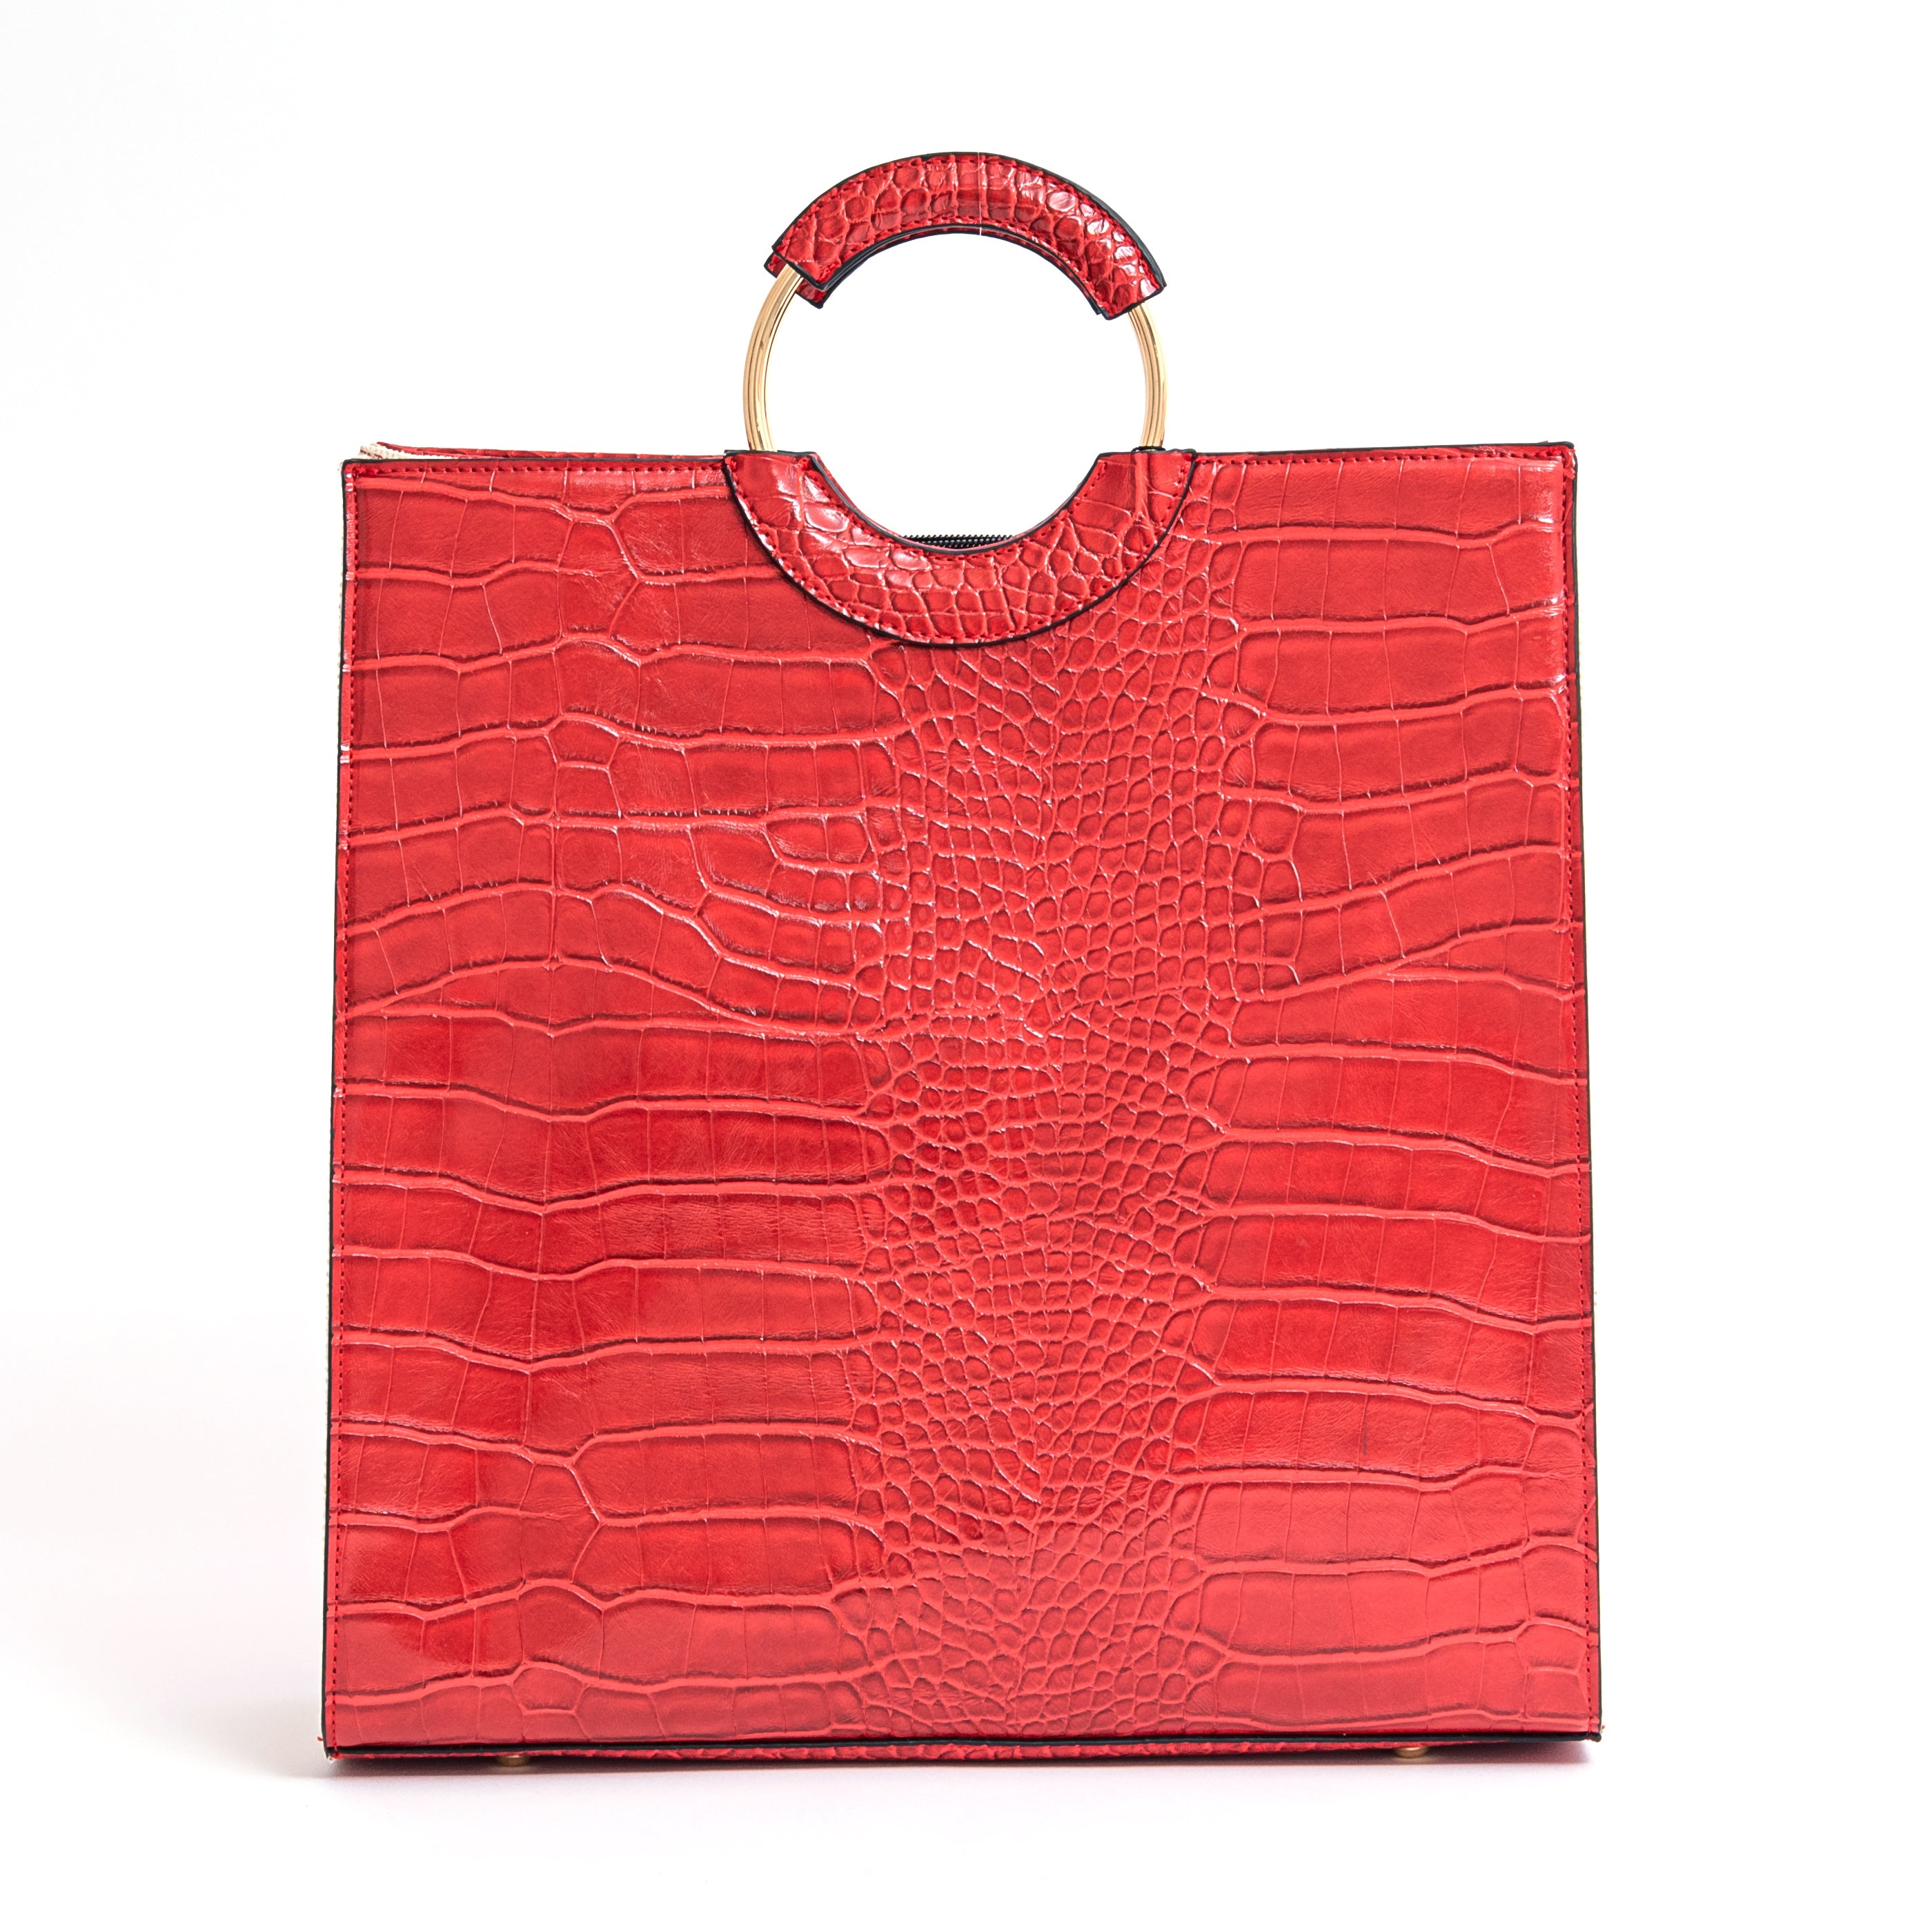 Okella “Crimson” Handbag